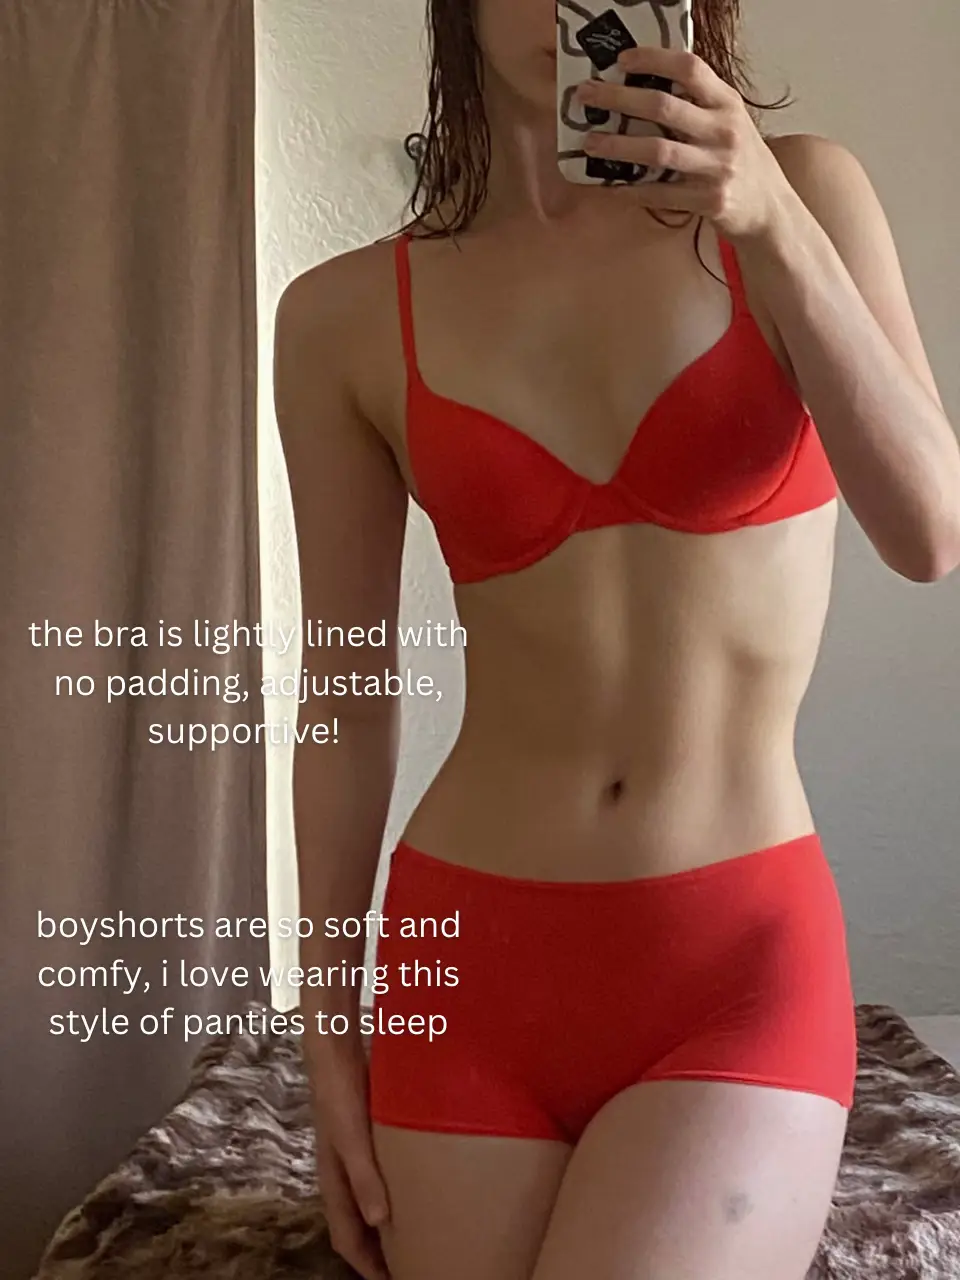 SHEIN underwear/lingerie haul  honest review of their underwear